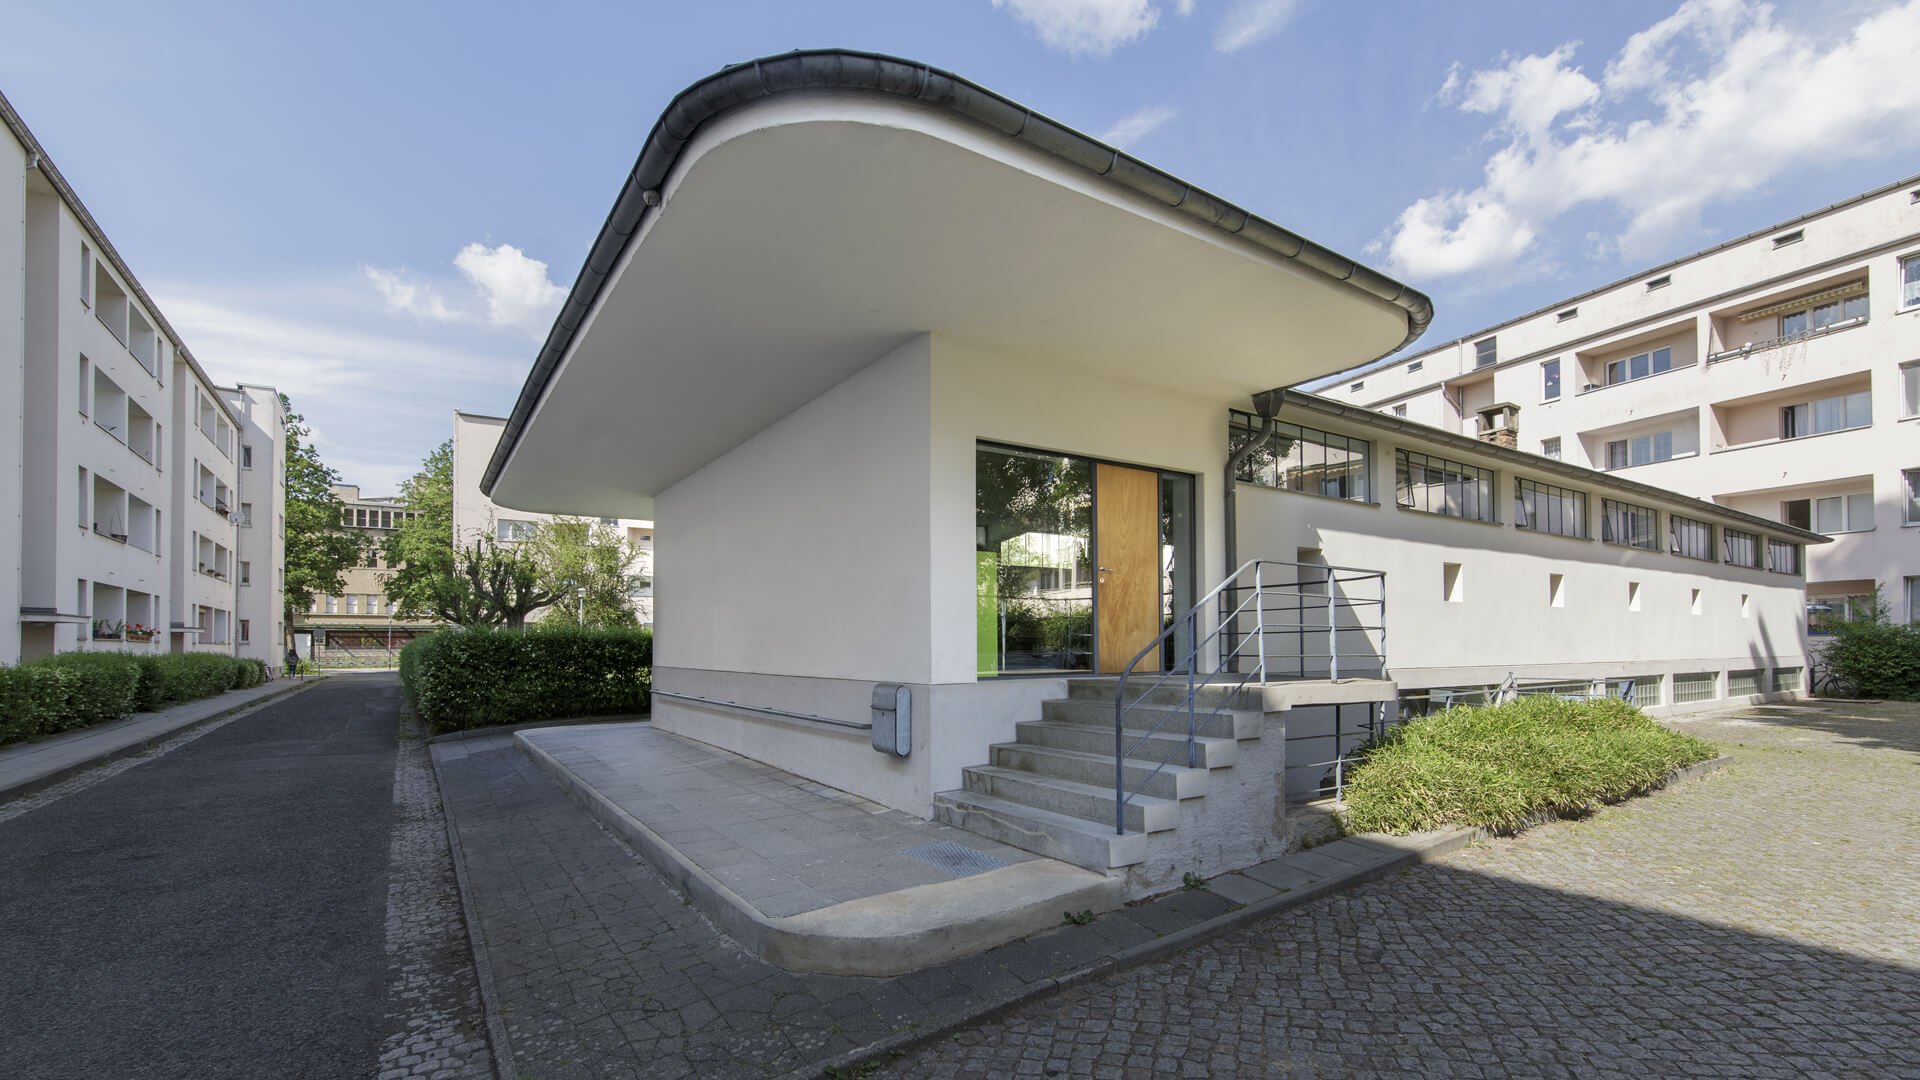 Unser Büro befindet sich im ehemaligen Wasch- und Heizhaus im Innenhof eines Wohnblocks aus den 20er Jahren - Architektur der Moderne von Hans Richter.